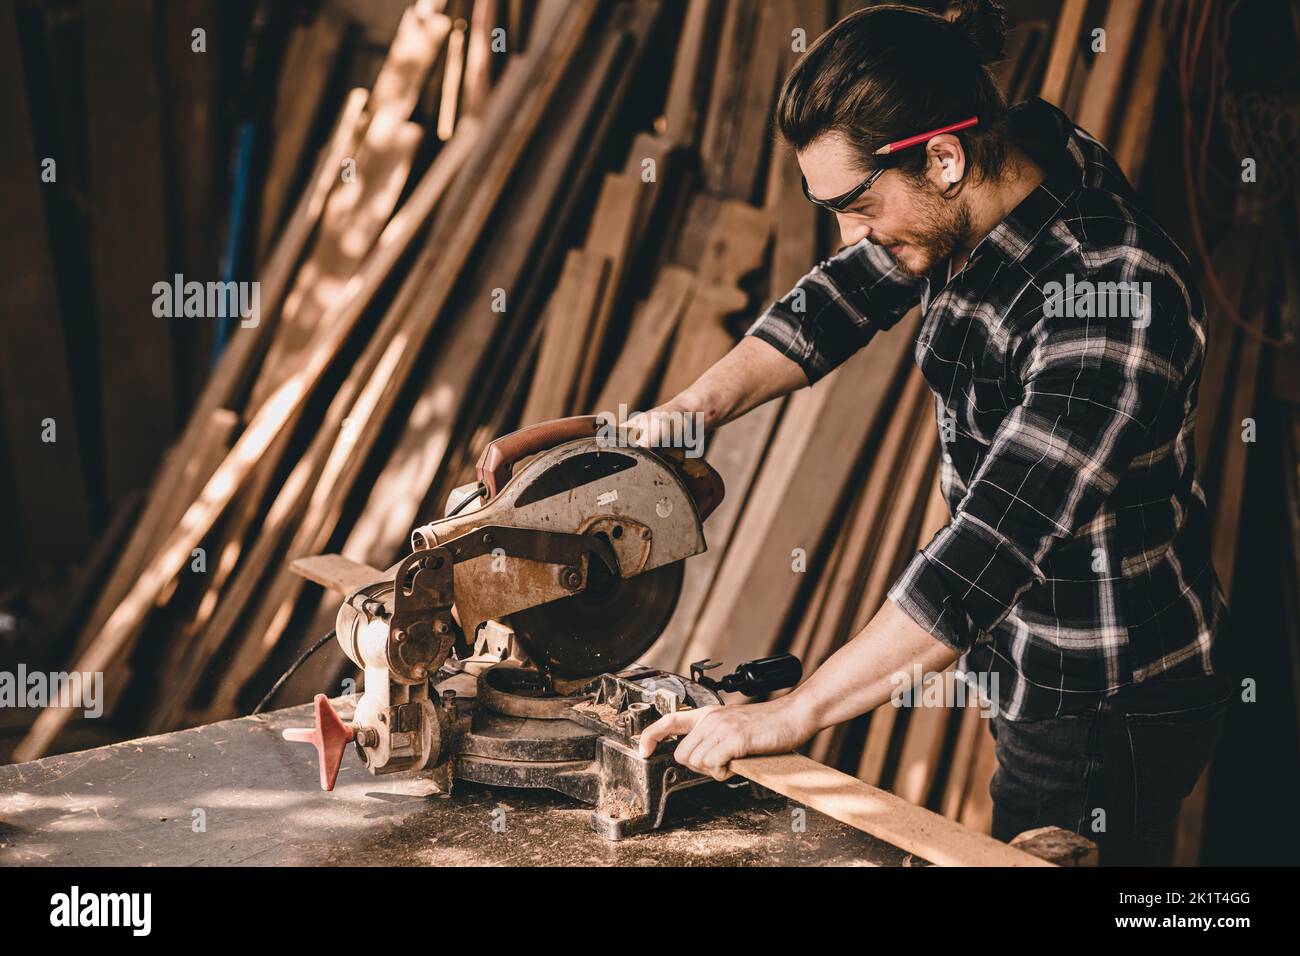 Profesional Carpenter hombre auténtico trabajador de madera artesanal. Joiner o constructor de muebles casa fabricante de proyectos de bricolaje masculino. Foto de stock